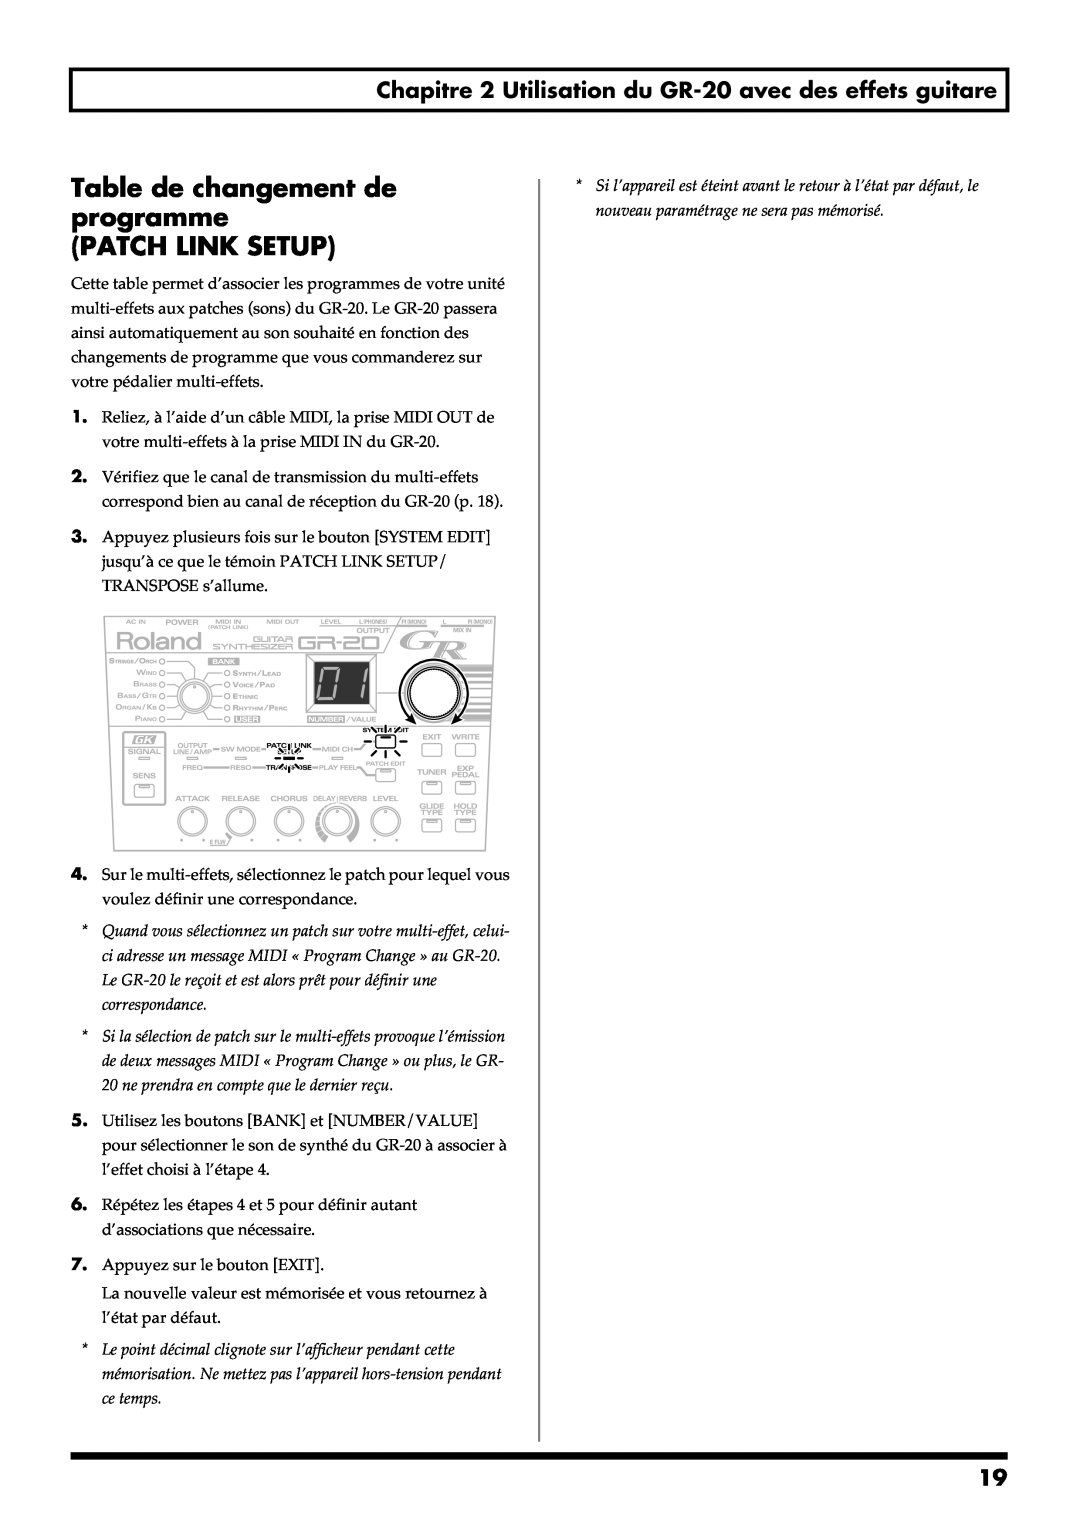 Roland GR-20 manual Table de changement de programme PATCH LINK SETUP 